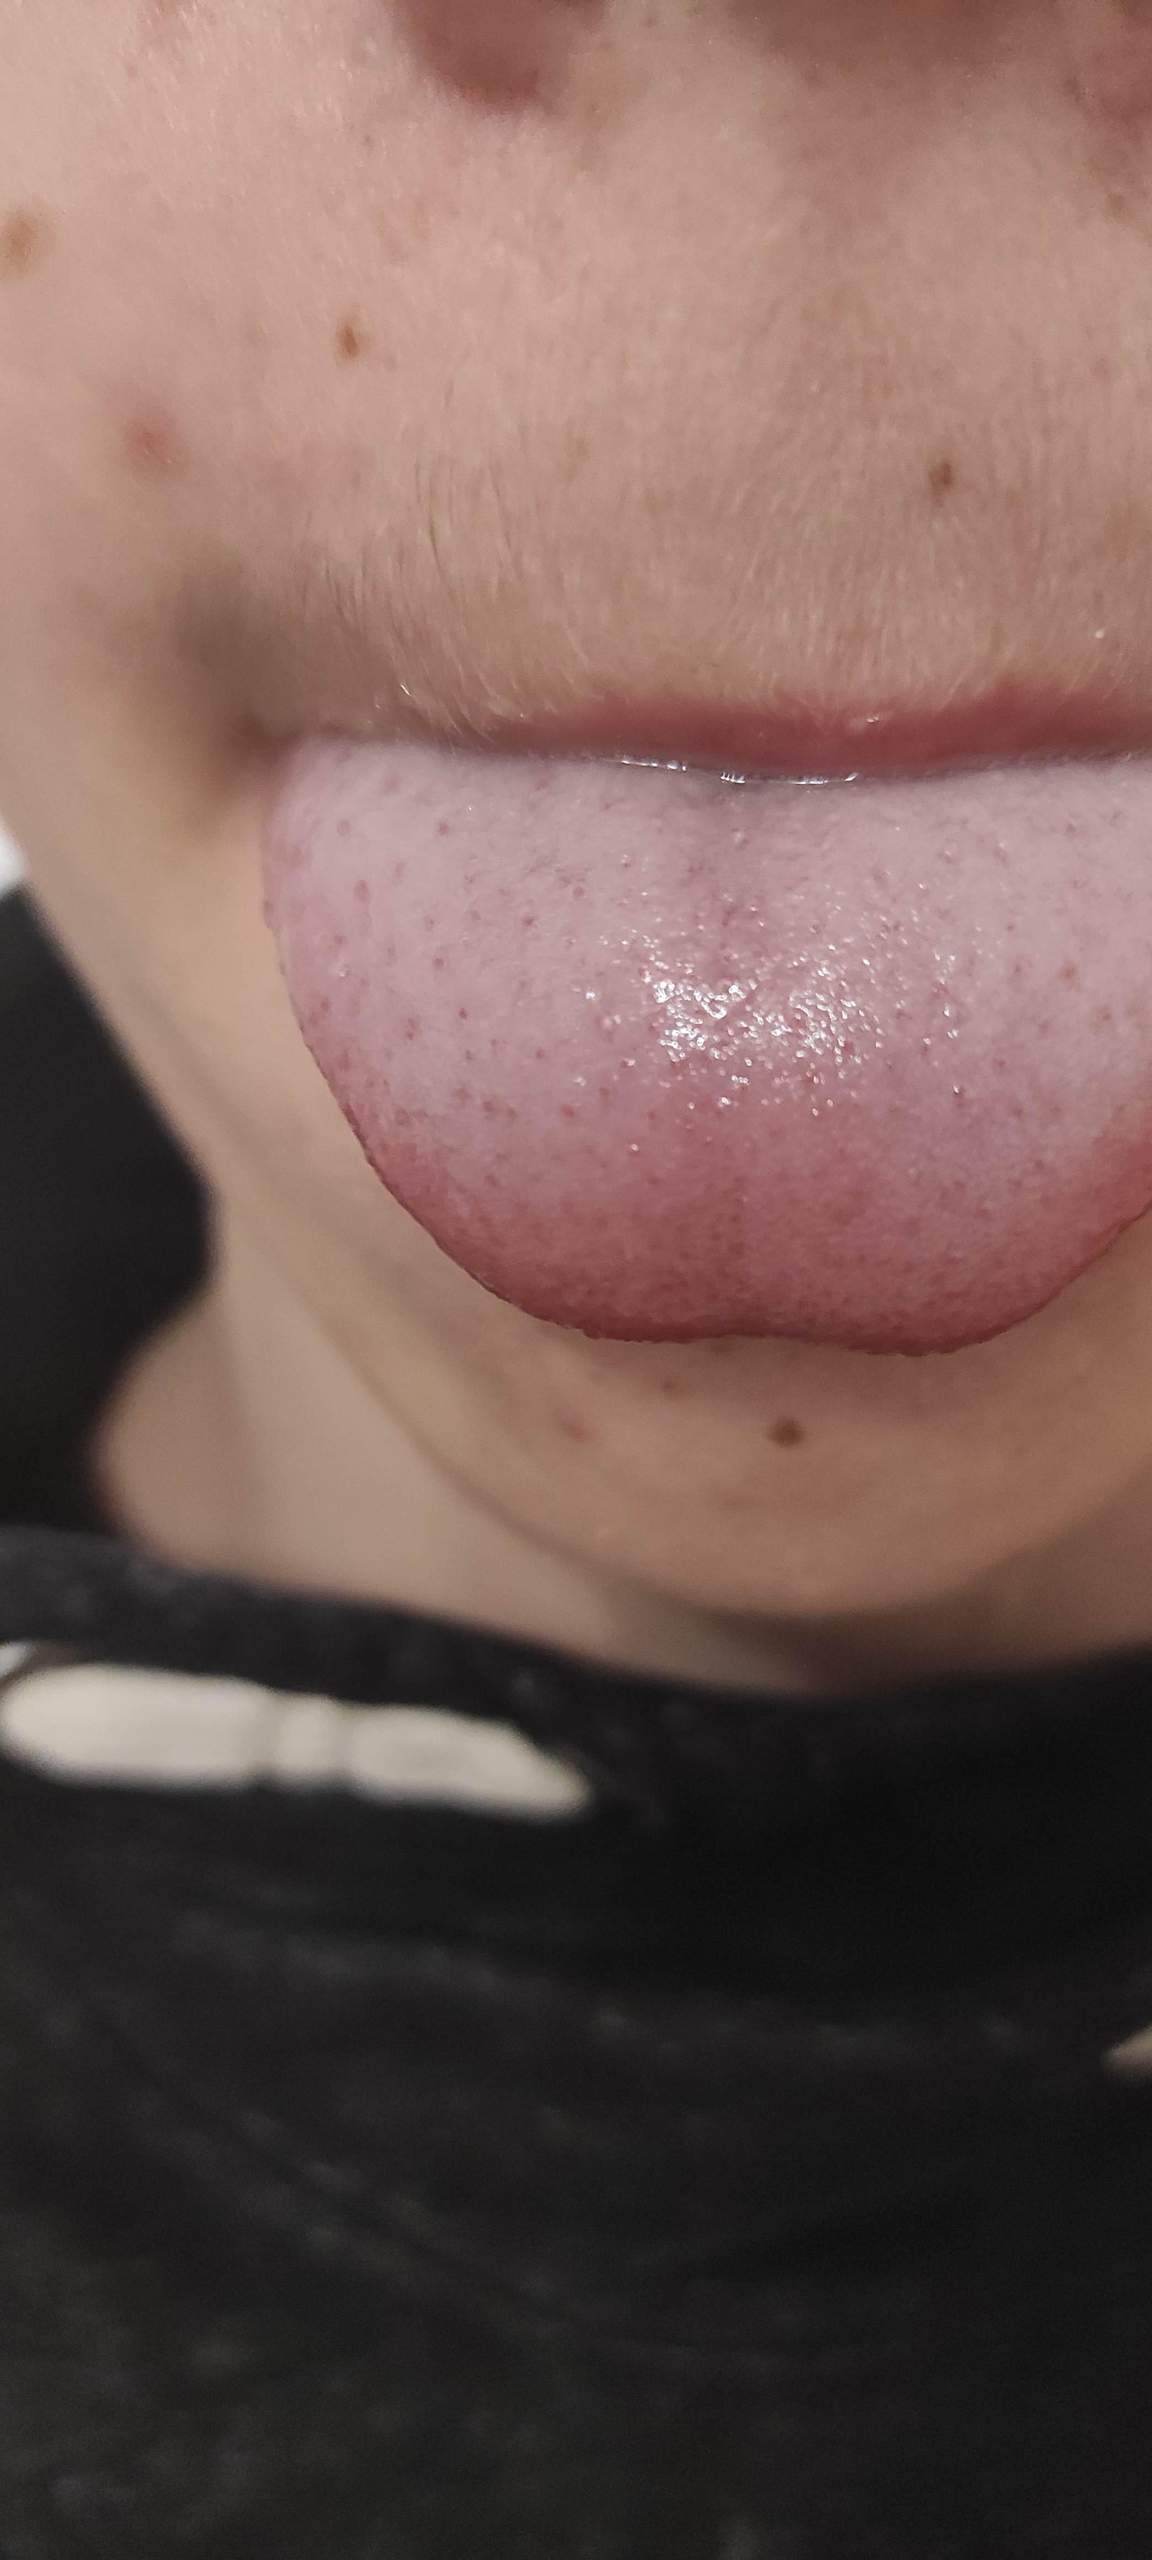 Zunge eiterbläschen Eiterpickel im